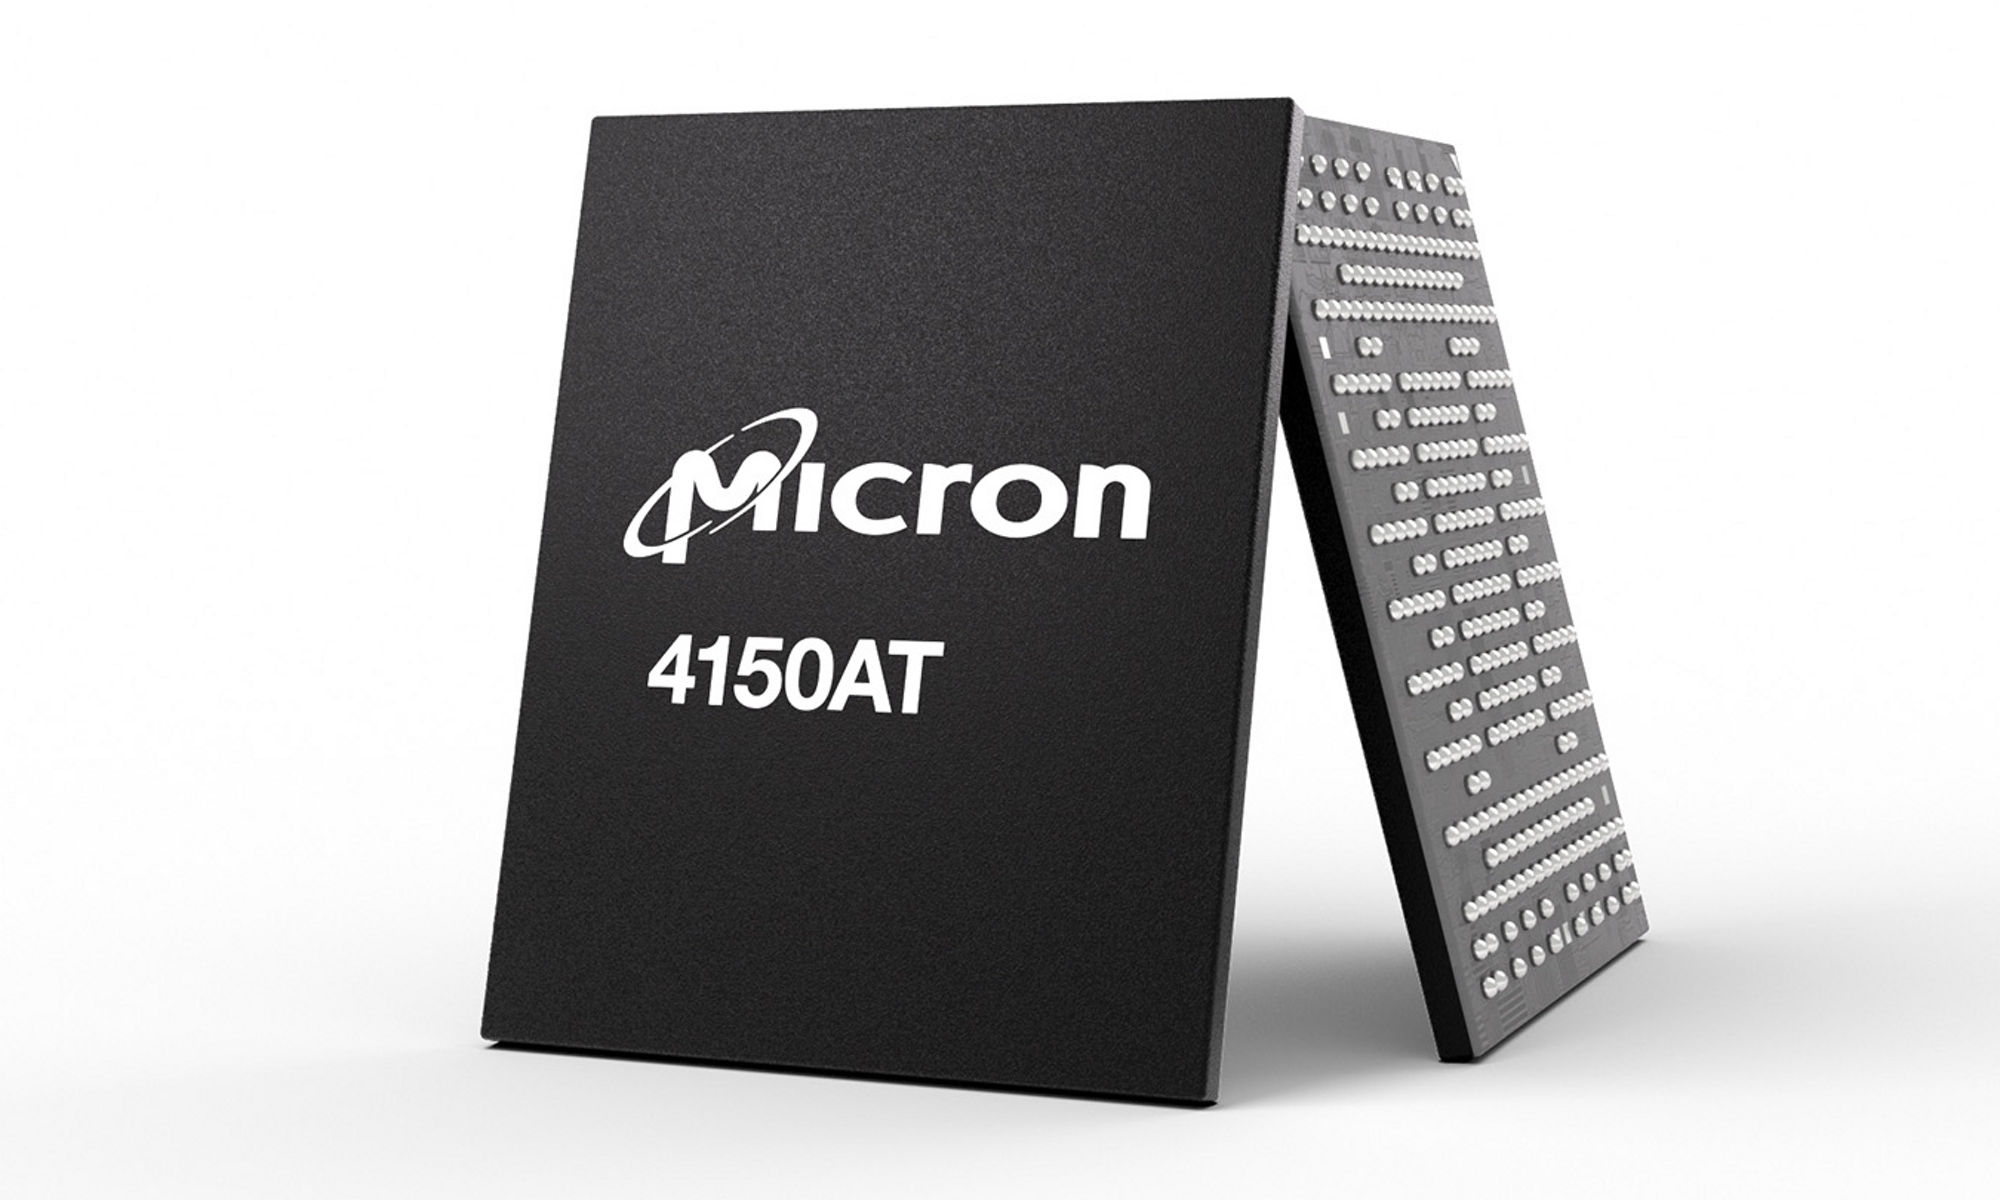 マイクロン4150AT SSDの表面と裏面